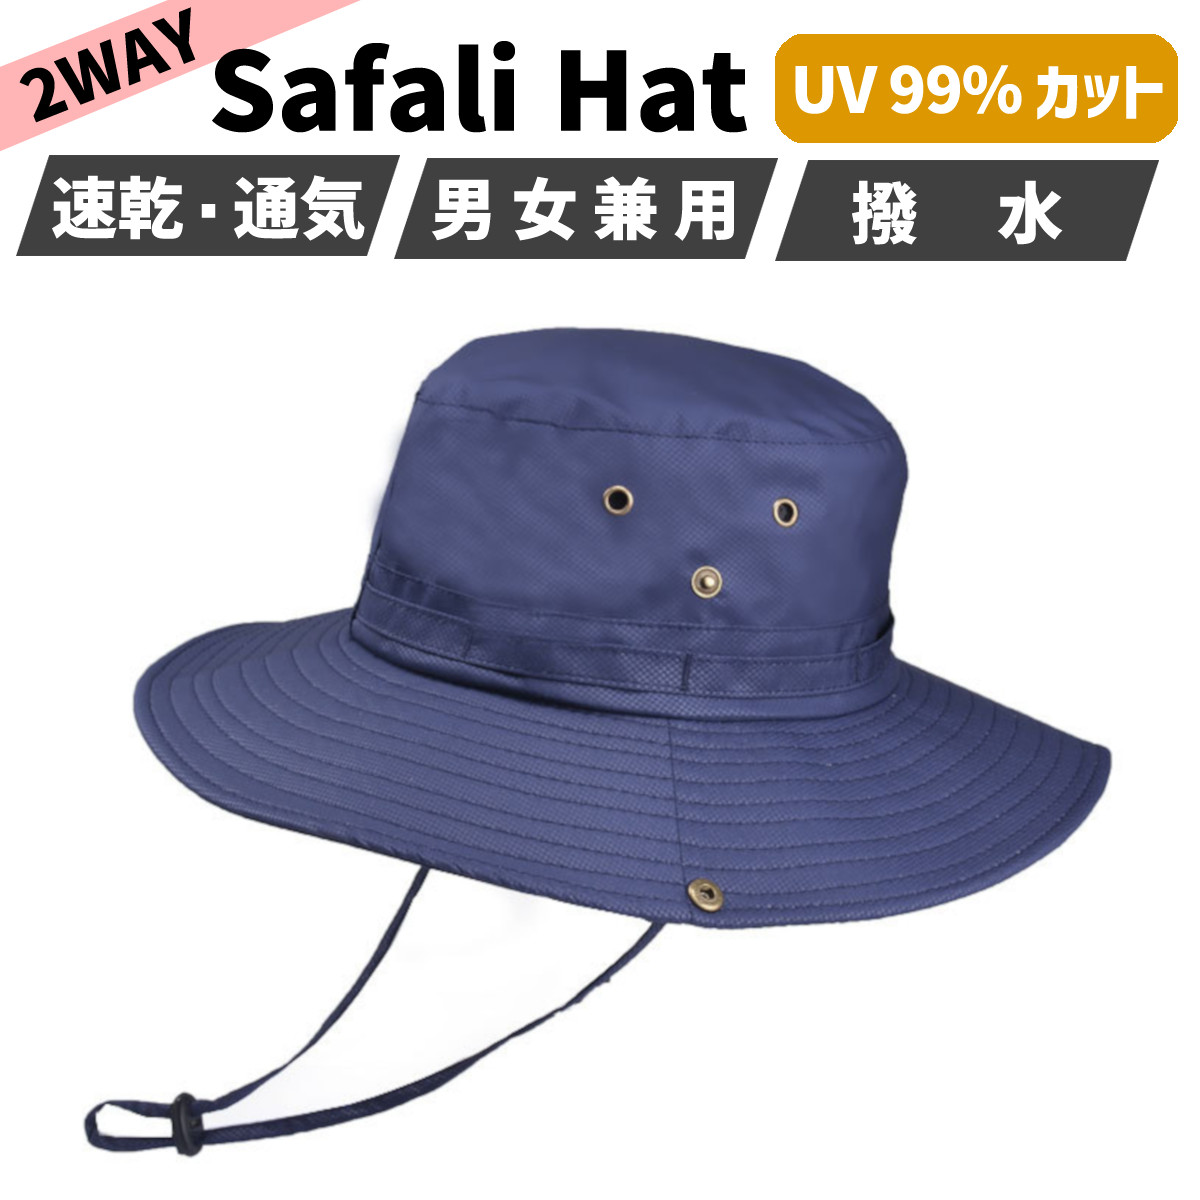 てなグッズやてなグッズやサファリハット メンズ レディース 撥水 大きい 帽子 ハット バケット つば広 UV カット あご紐 財布、帽子、ファッション小物 